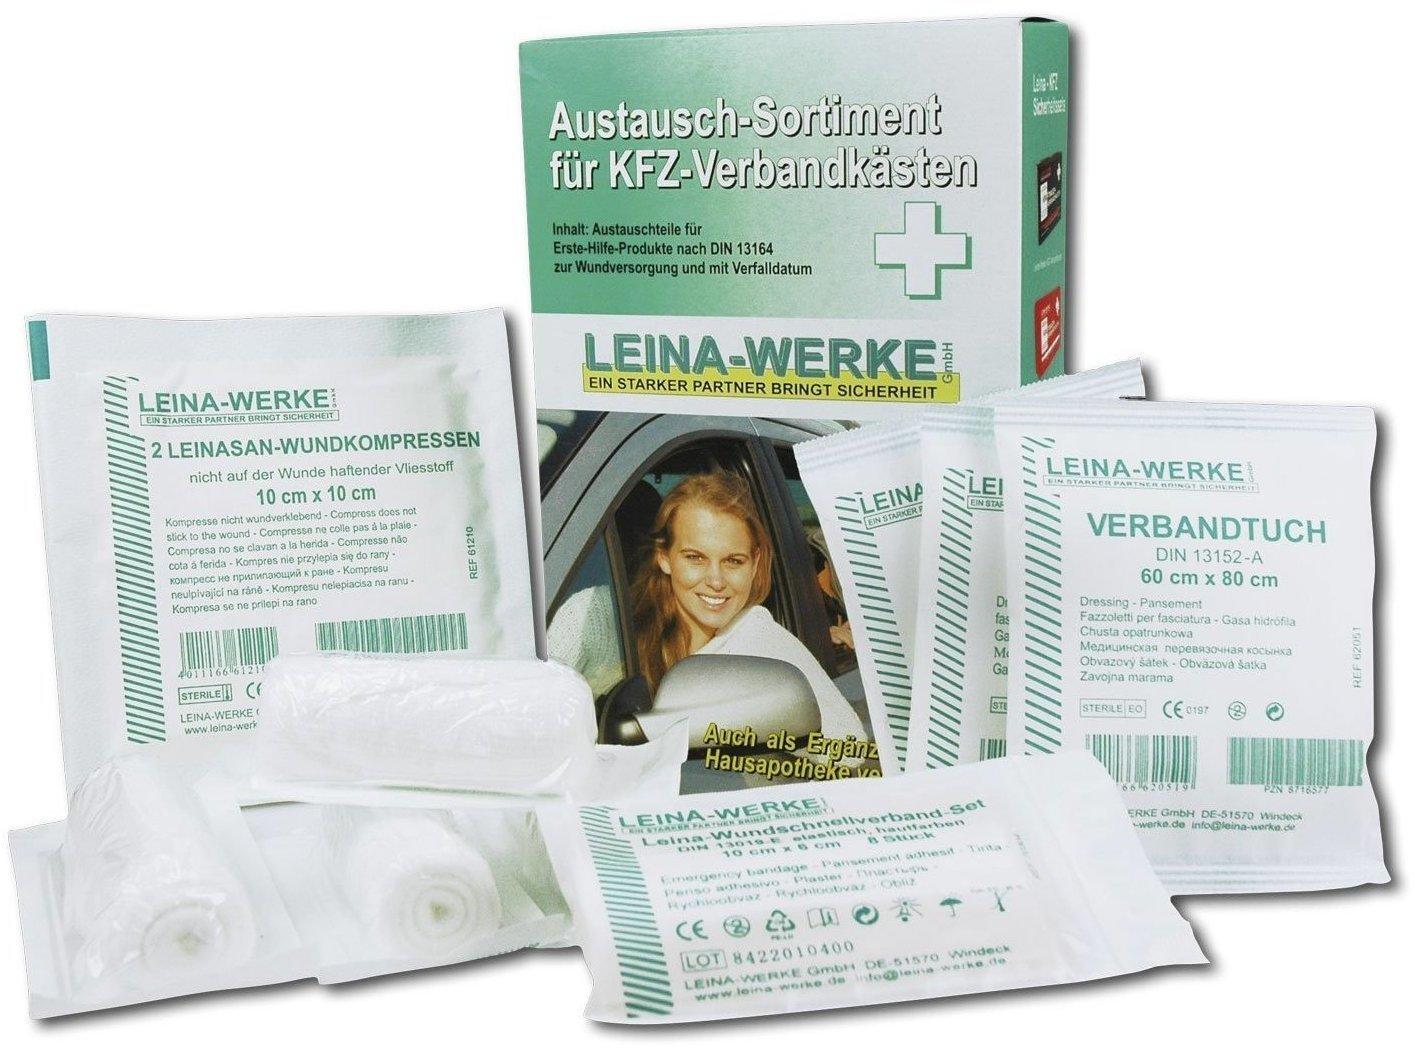 Leina-Werke Austausch-Set für KFZ-Verbandskasten DIN 13164 Test - ab 5,66 €